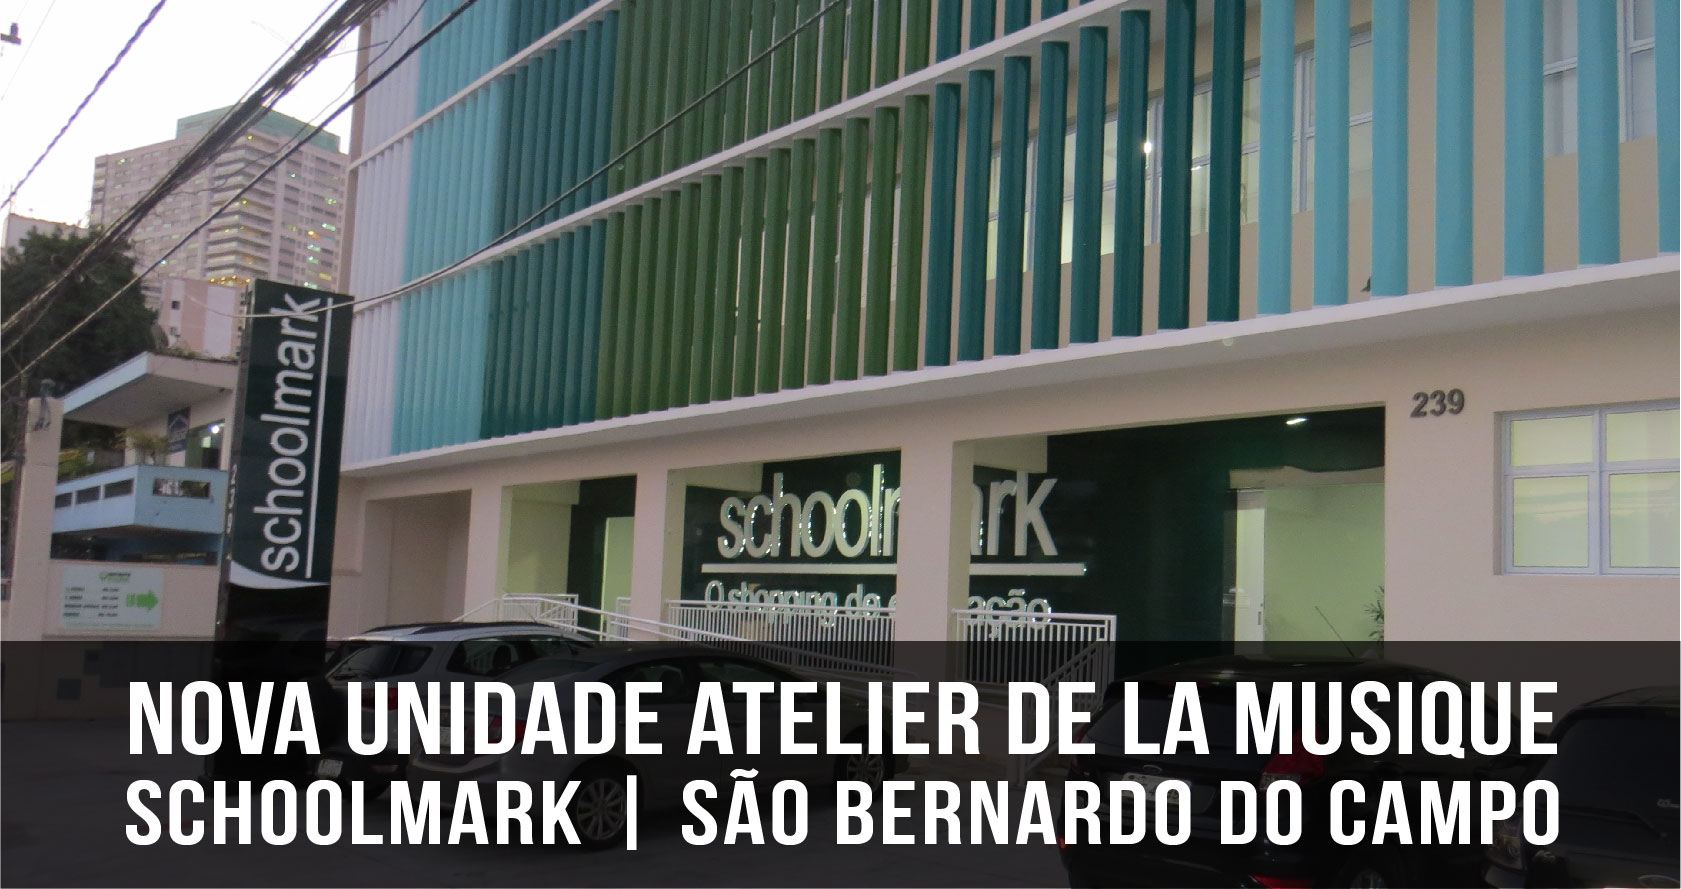 Nova unidade Atelier de La Musique | Schoolmark São Bernardo do Campo